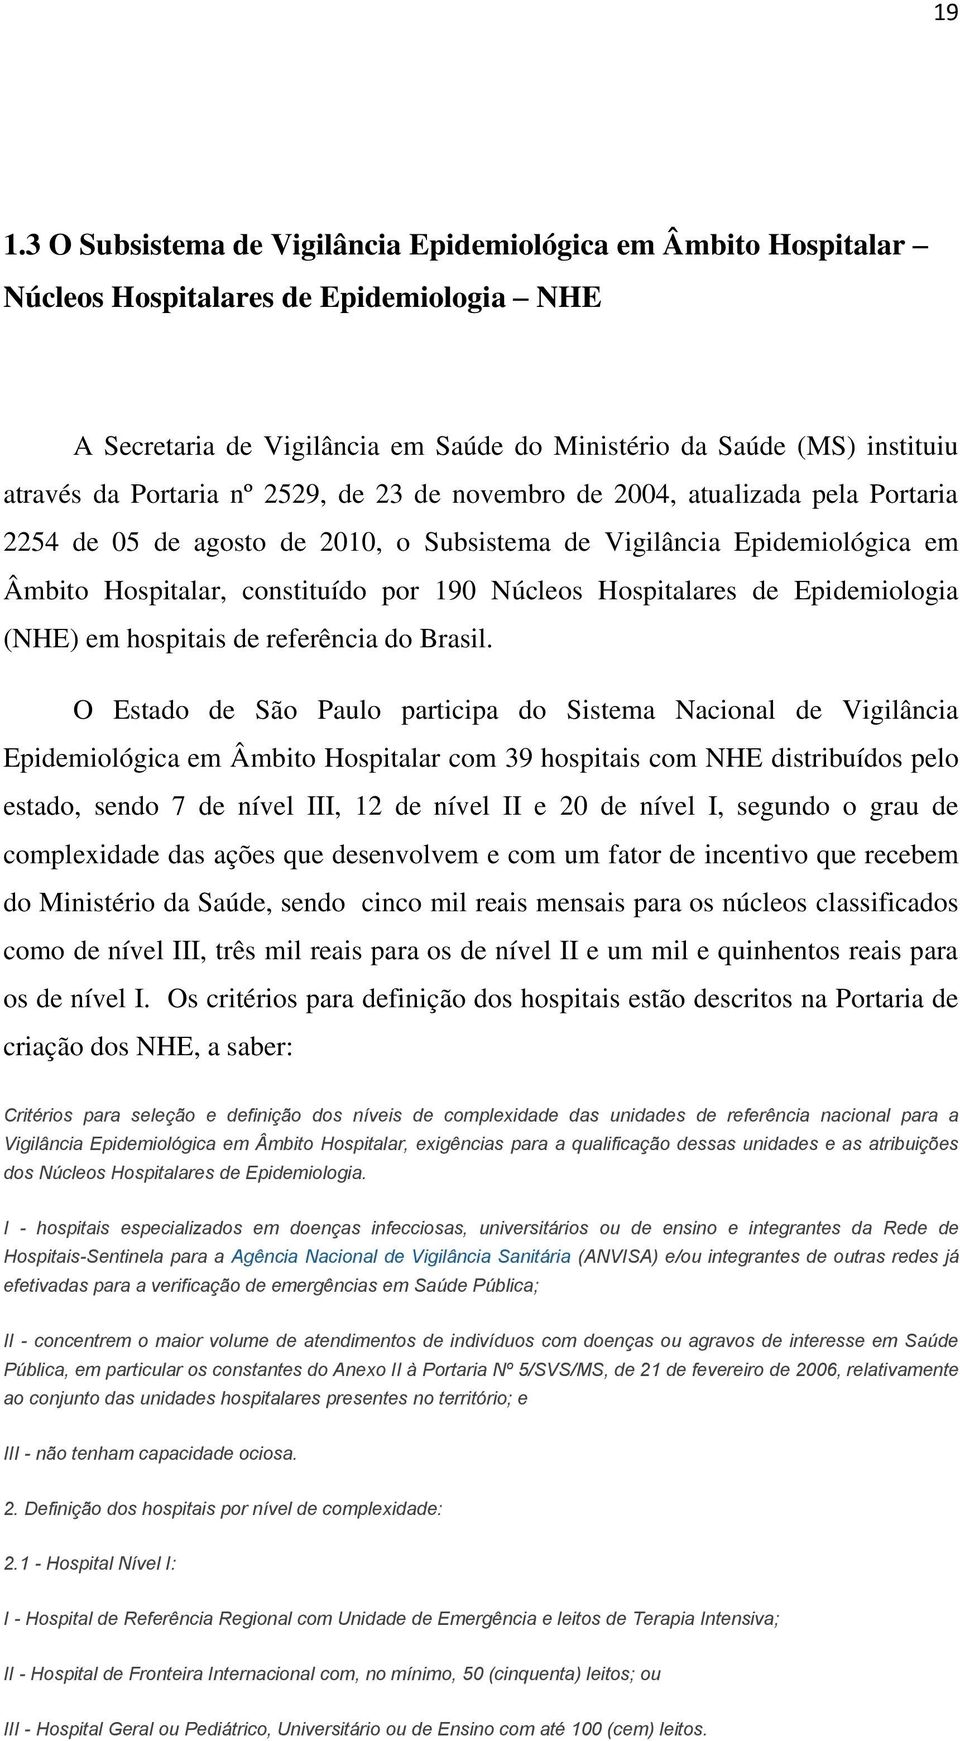 Hospitalares de Epidemiologia (NHE) em hospitais de referência do Brasil.